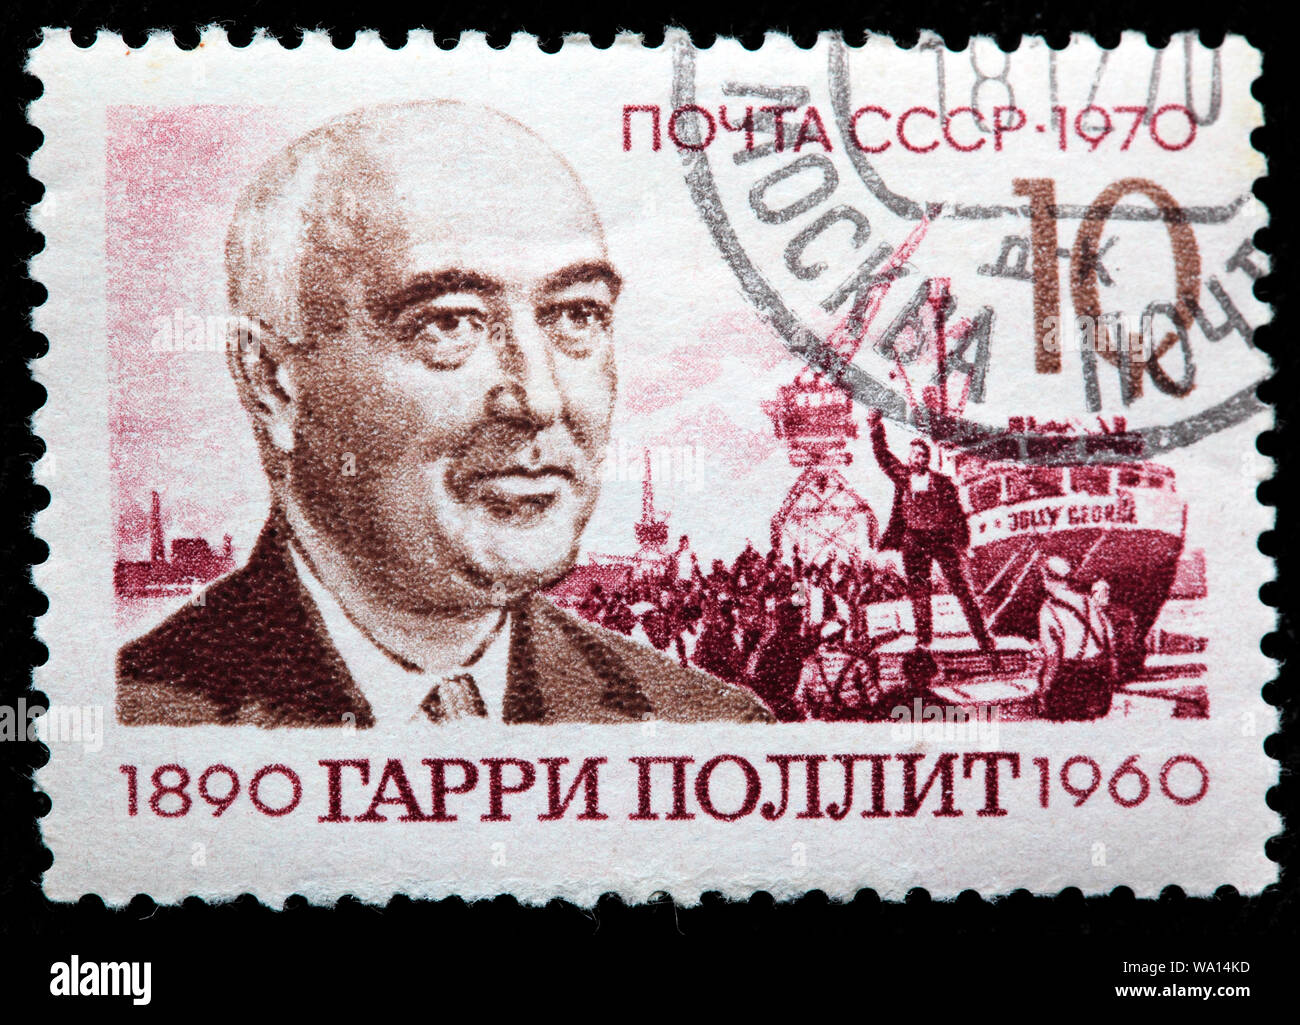 Harry Pollitt (1890-1960), Secrétaire Général du Parti communiste de Grande-Bretagne, timbre-poste, Russie, URSS, 1970 Banque D'Images